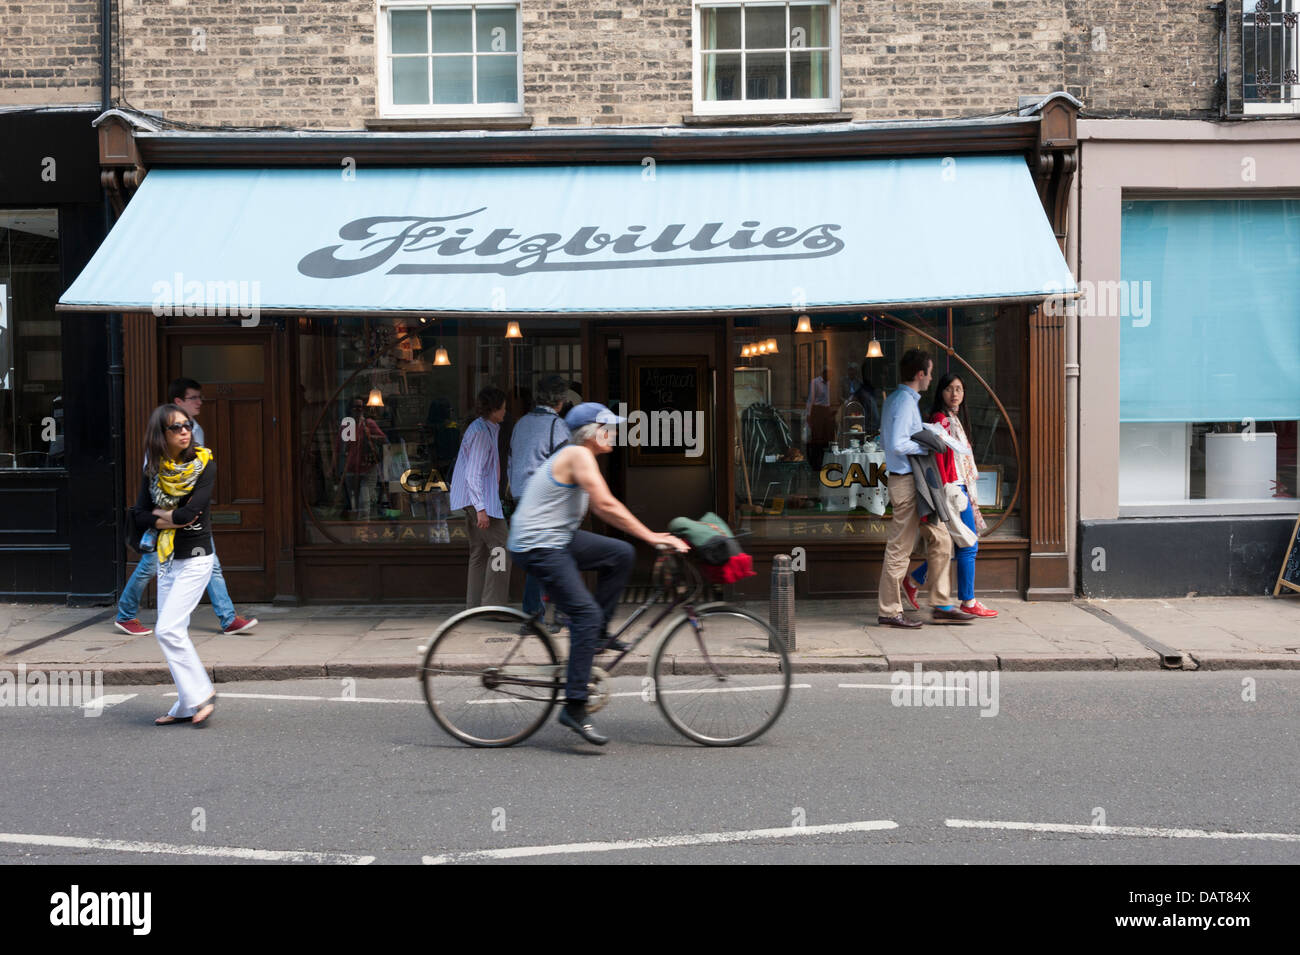 Fitzbillies cafe and bakers shop Trumpington Street Cambridge UK Stock Photo